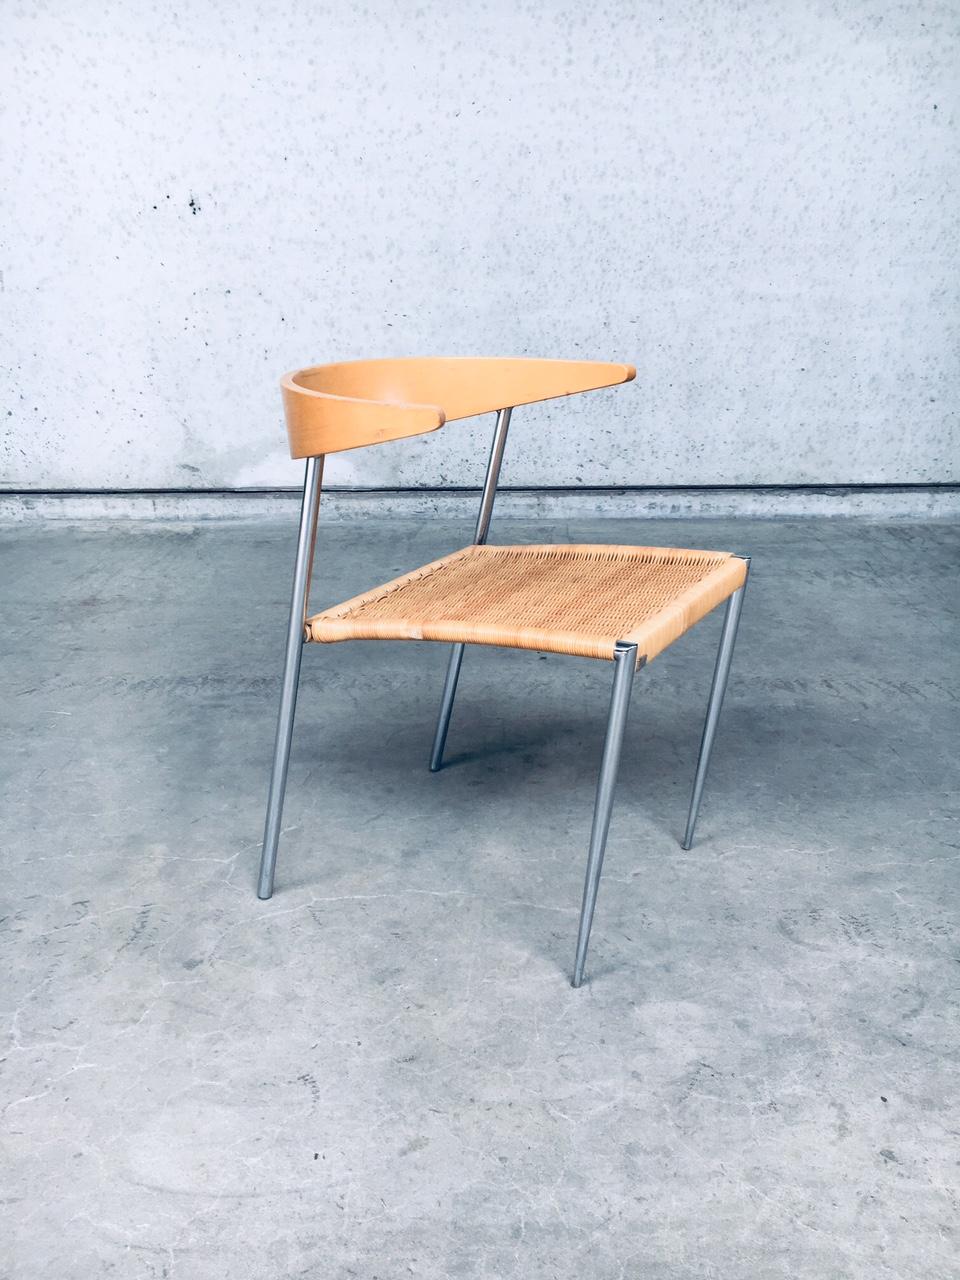 Chaise à manger de design italien postmoderne par Pierantonio Bonacina, fabriquée en Italie dans les années 1990. Dossier en bois pressé en forme de tête de coq, assise en rotin tressé et base en métal chromé. Peut être utilisé comme chaise de